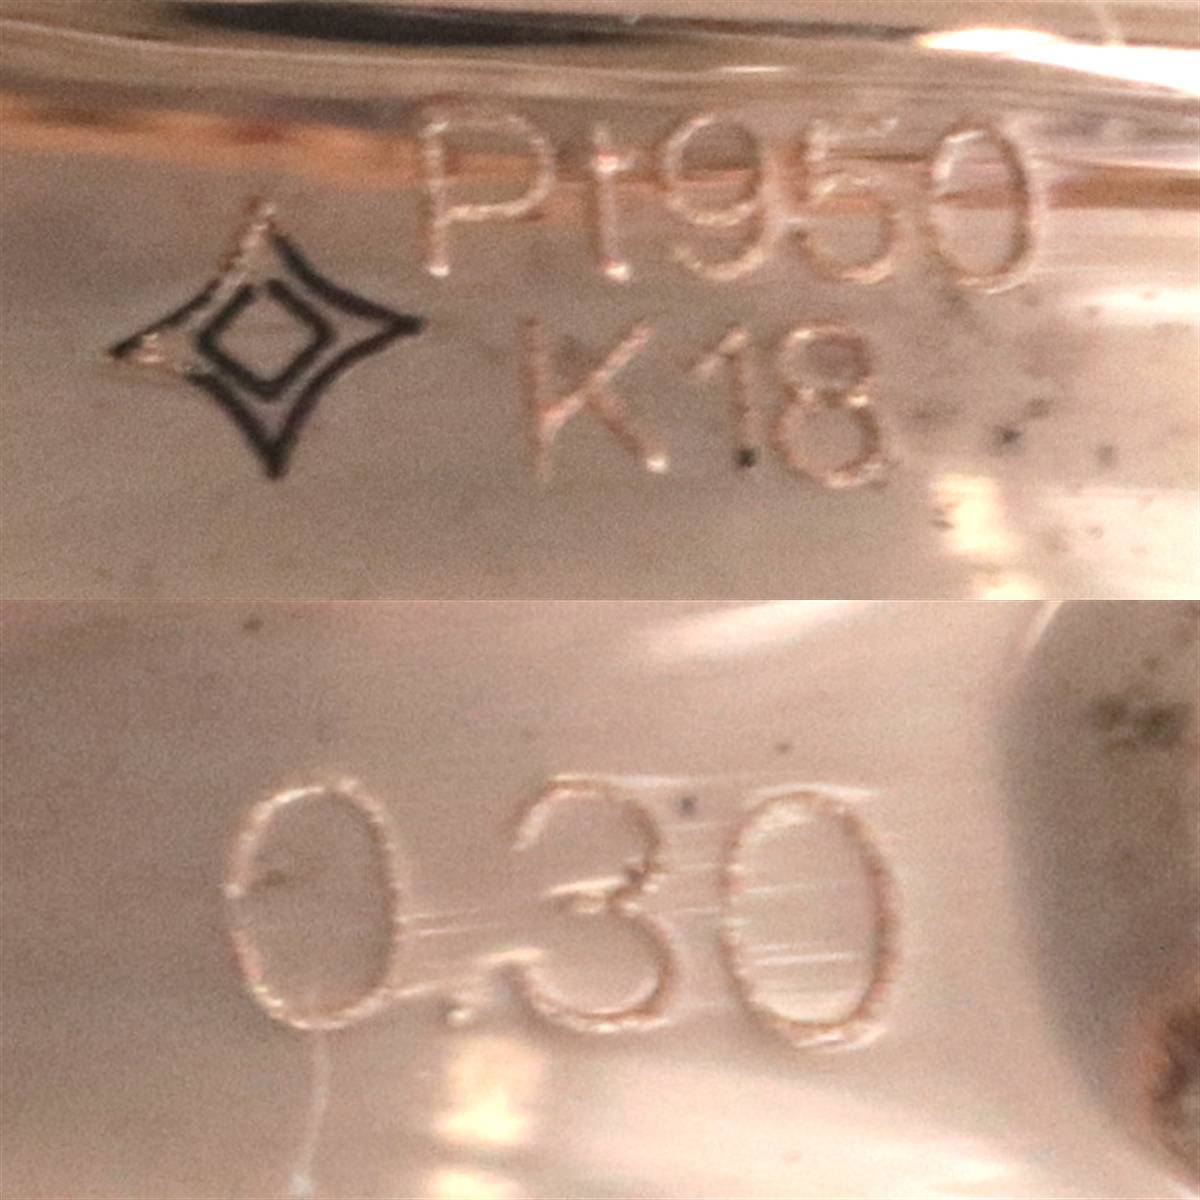 K18PG・Pt950コンビ ダイヤリング 10号 0.30刻印 HO 磨き仕上げ品 Aランク_画像6